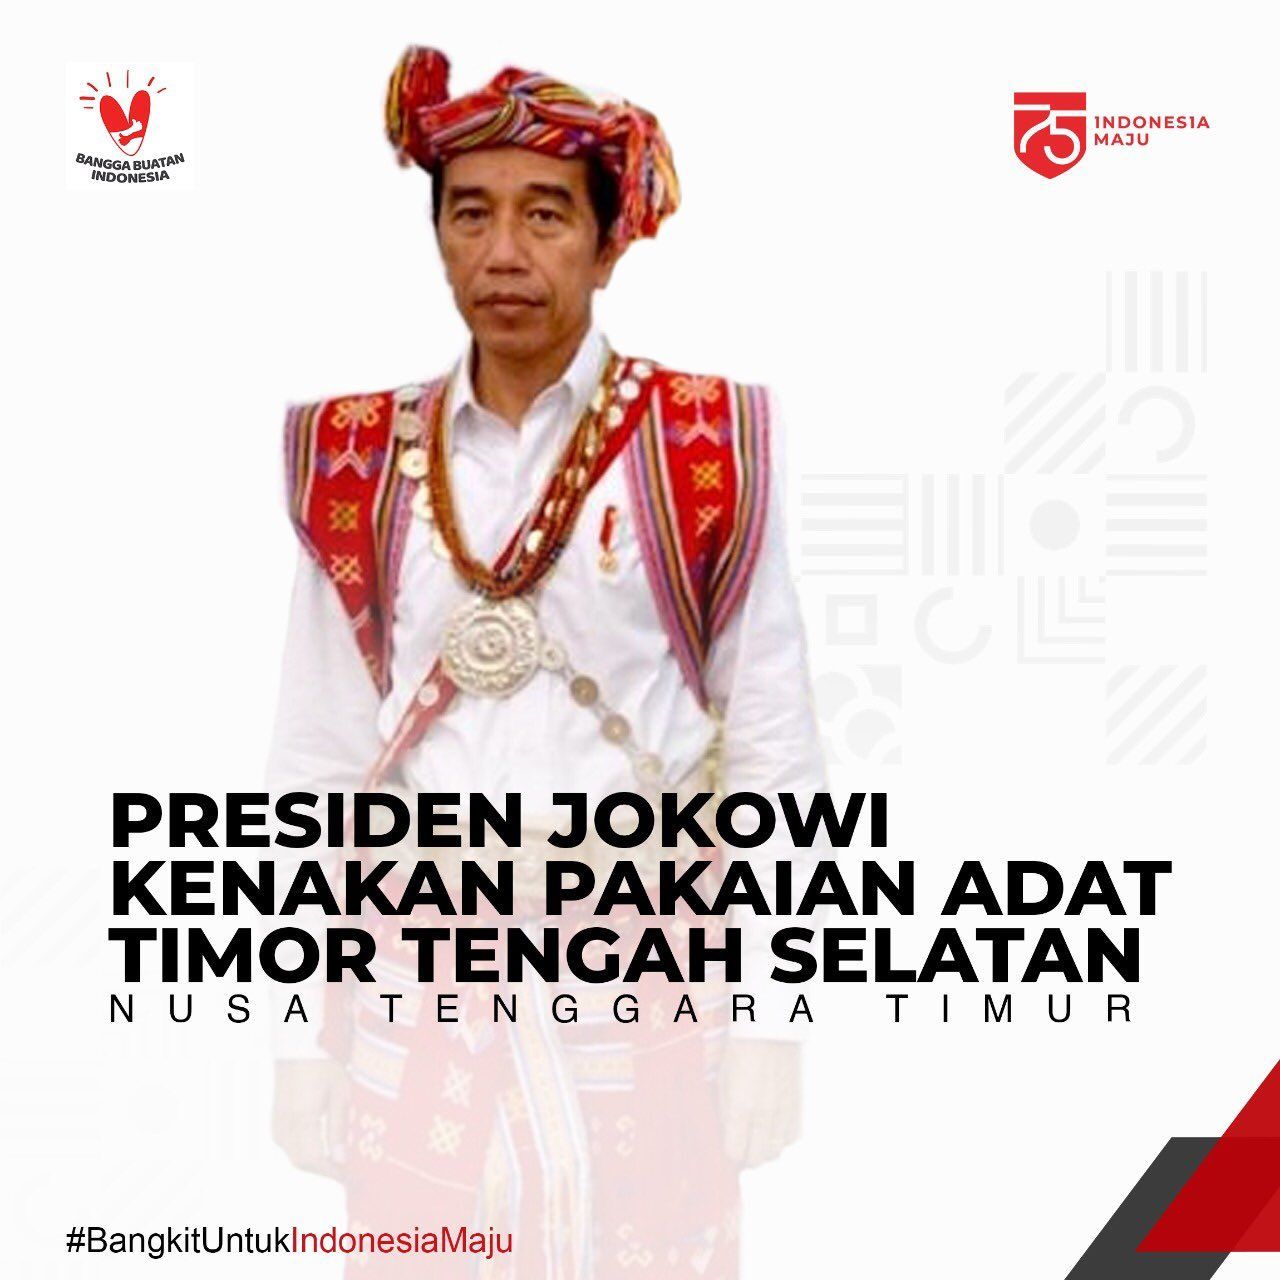 Presiden Jokowi Kenakan Pakaian Adat Timor Tengah Selatan, Nusa Tenggara Timur